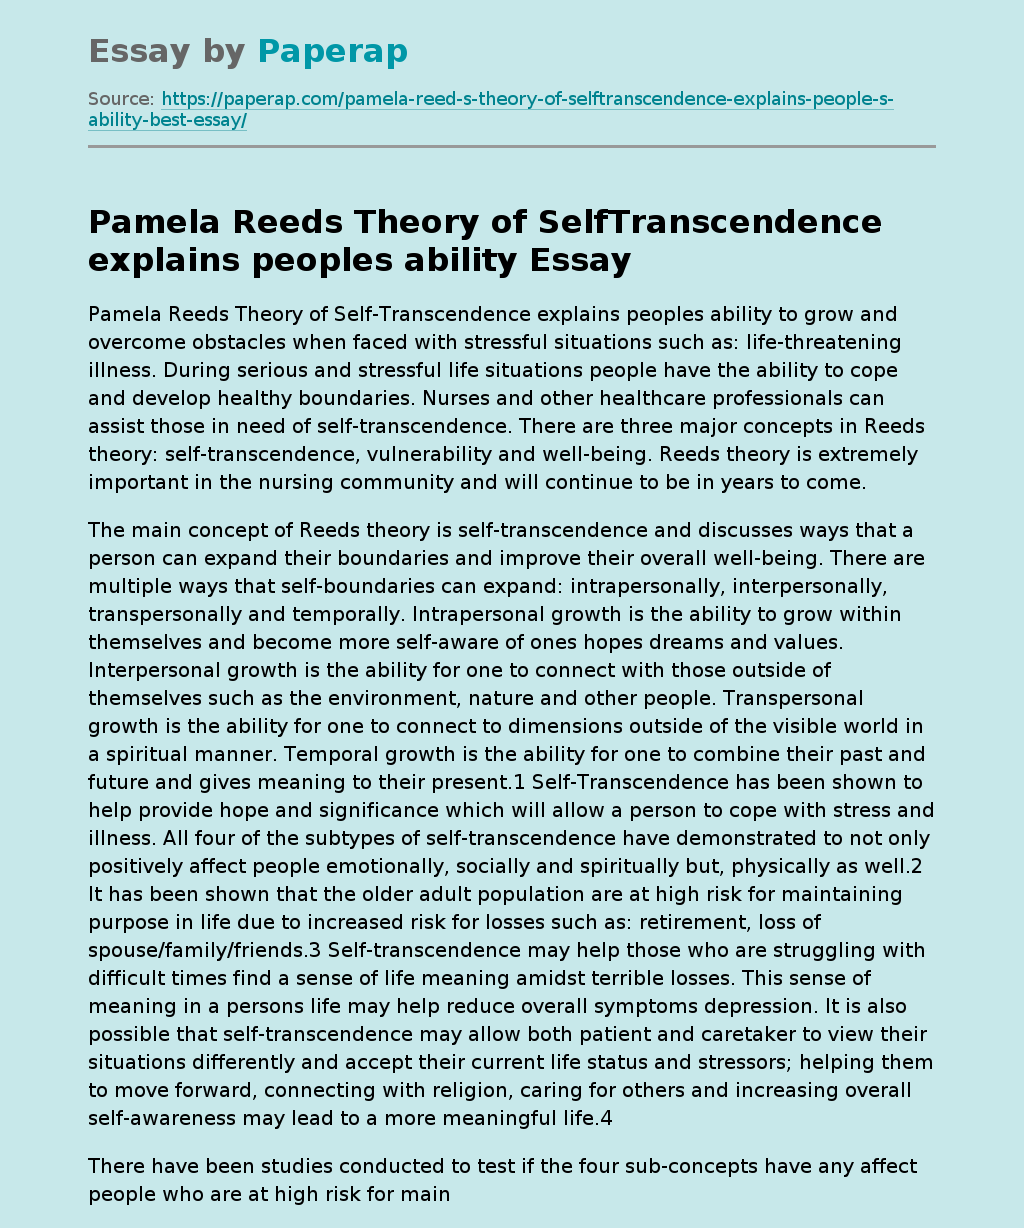 Pamela Reeds Theory of SelfTranscendence explains peoples ability